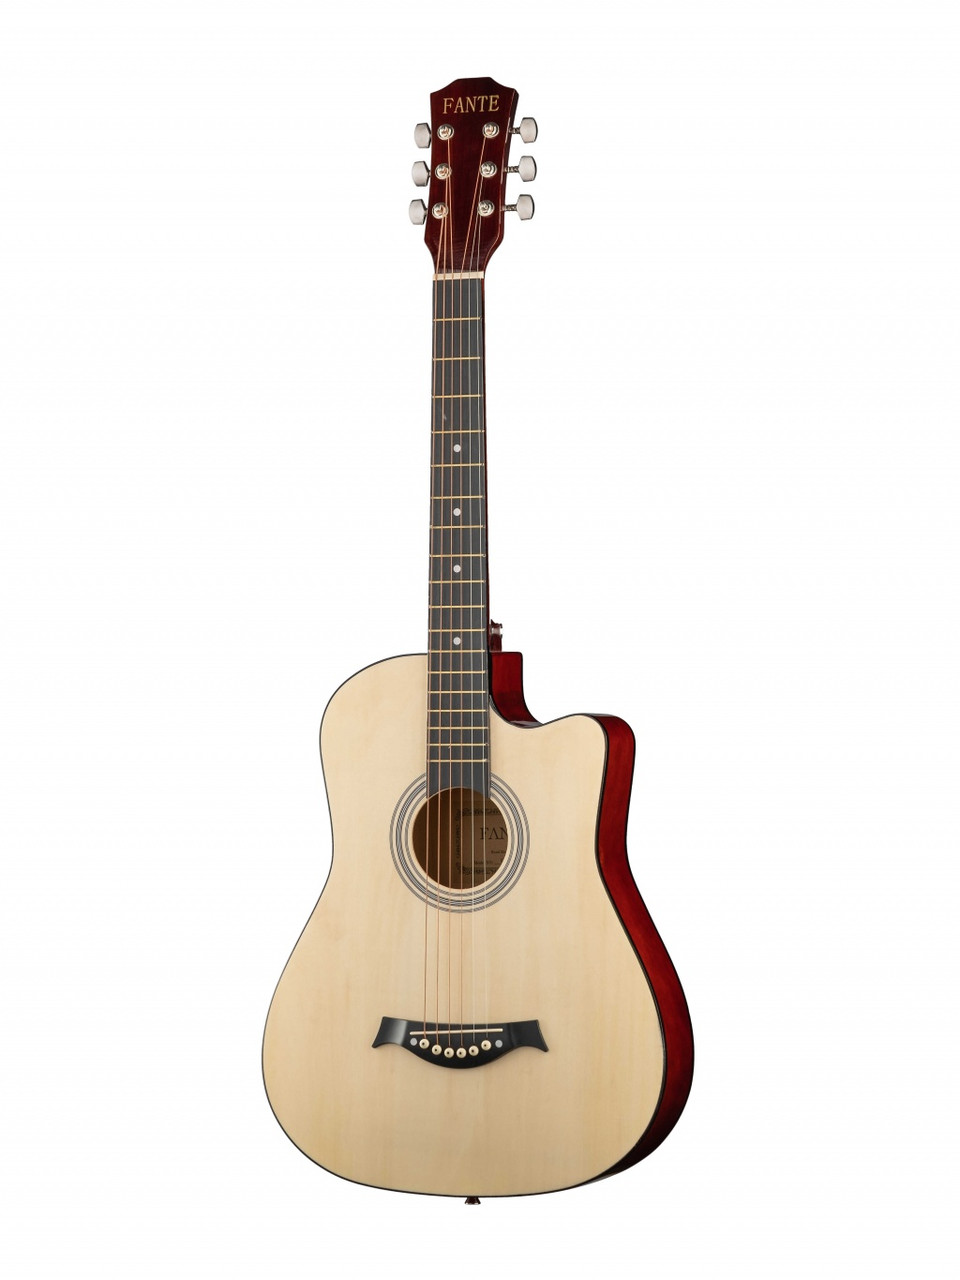 Акустическая гитара, с вырезом, цвет натуральный, Fante FT-D38-N